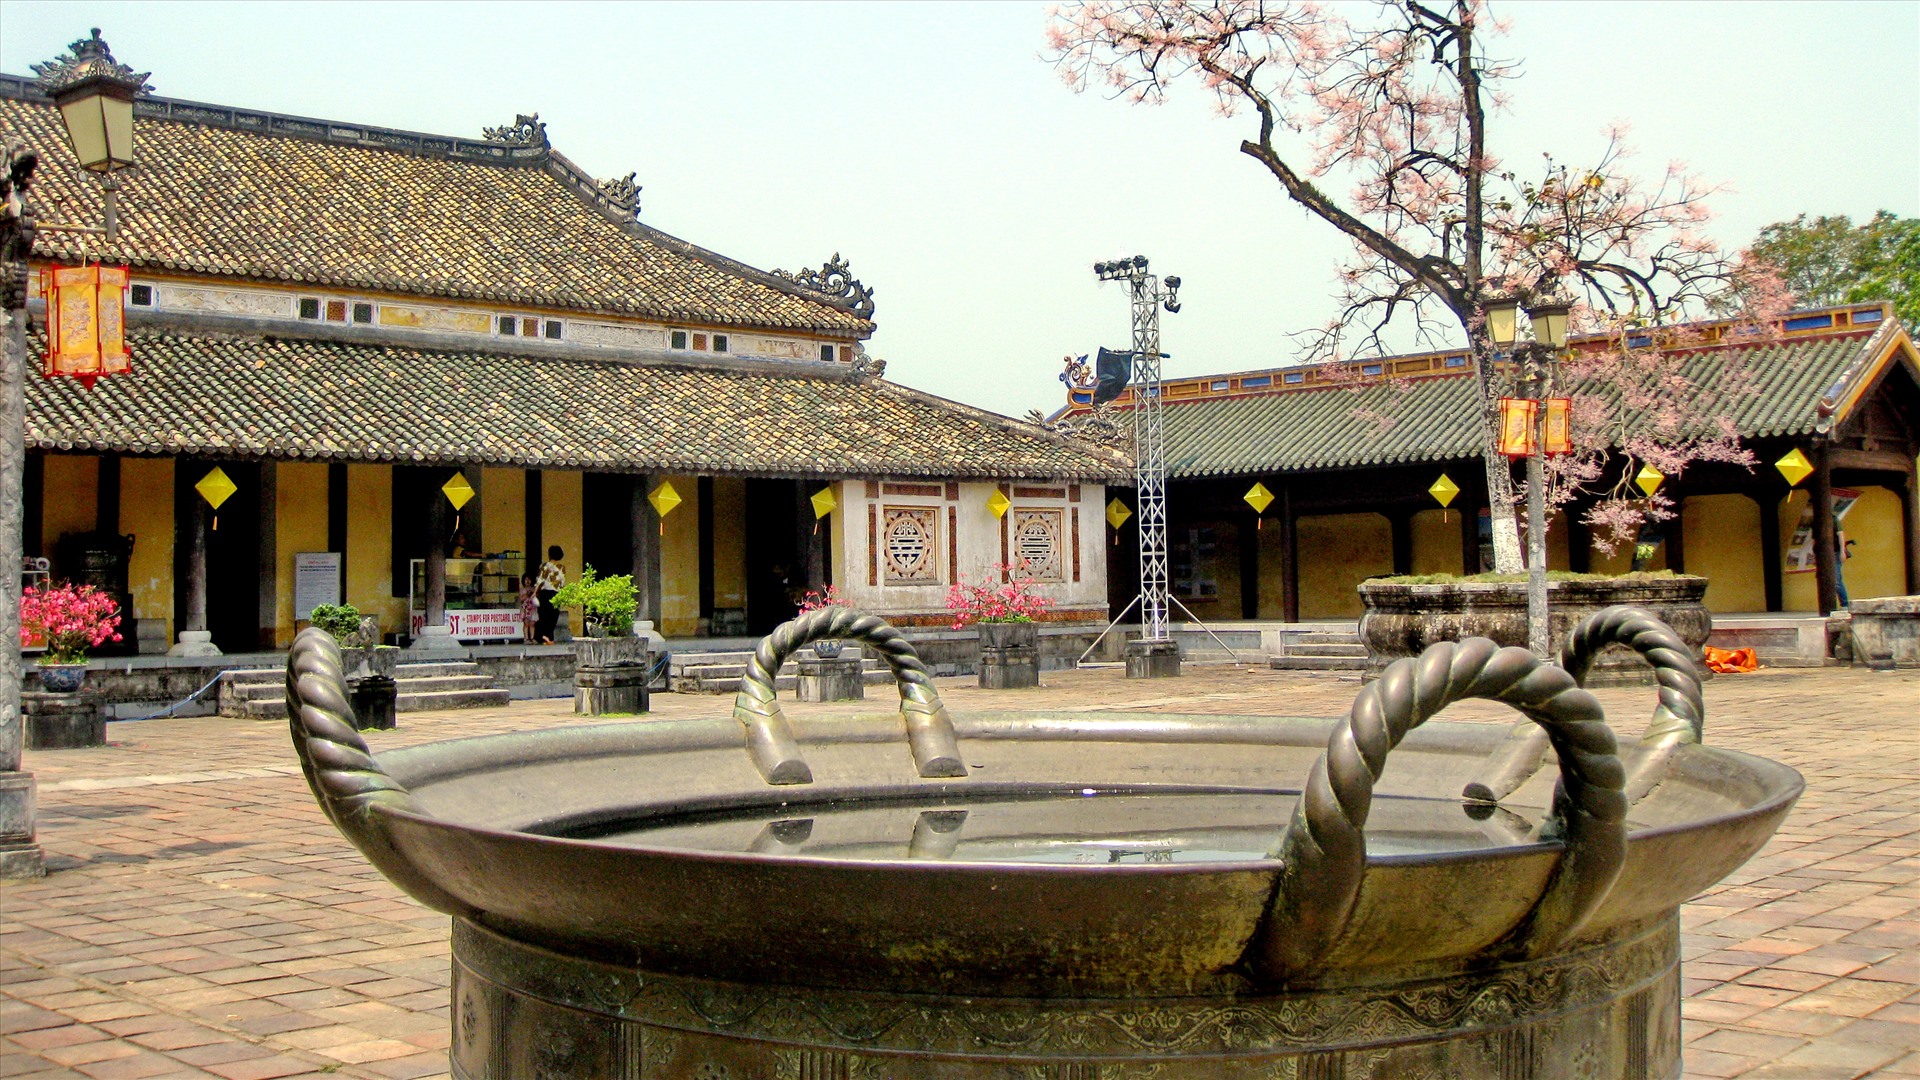 Vạc đồng thời Nguyễn trong Hoàng Thành, Huế. Ảnh: Thái Hoàng